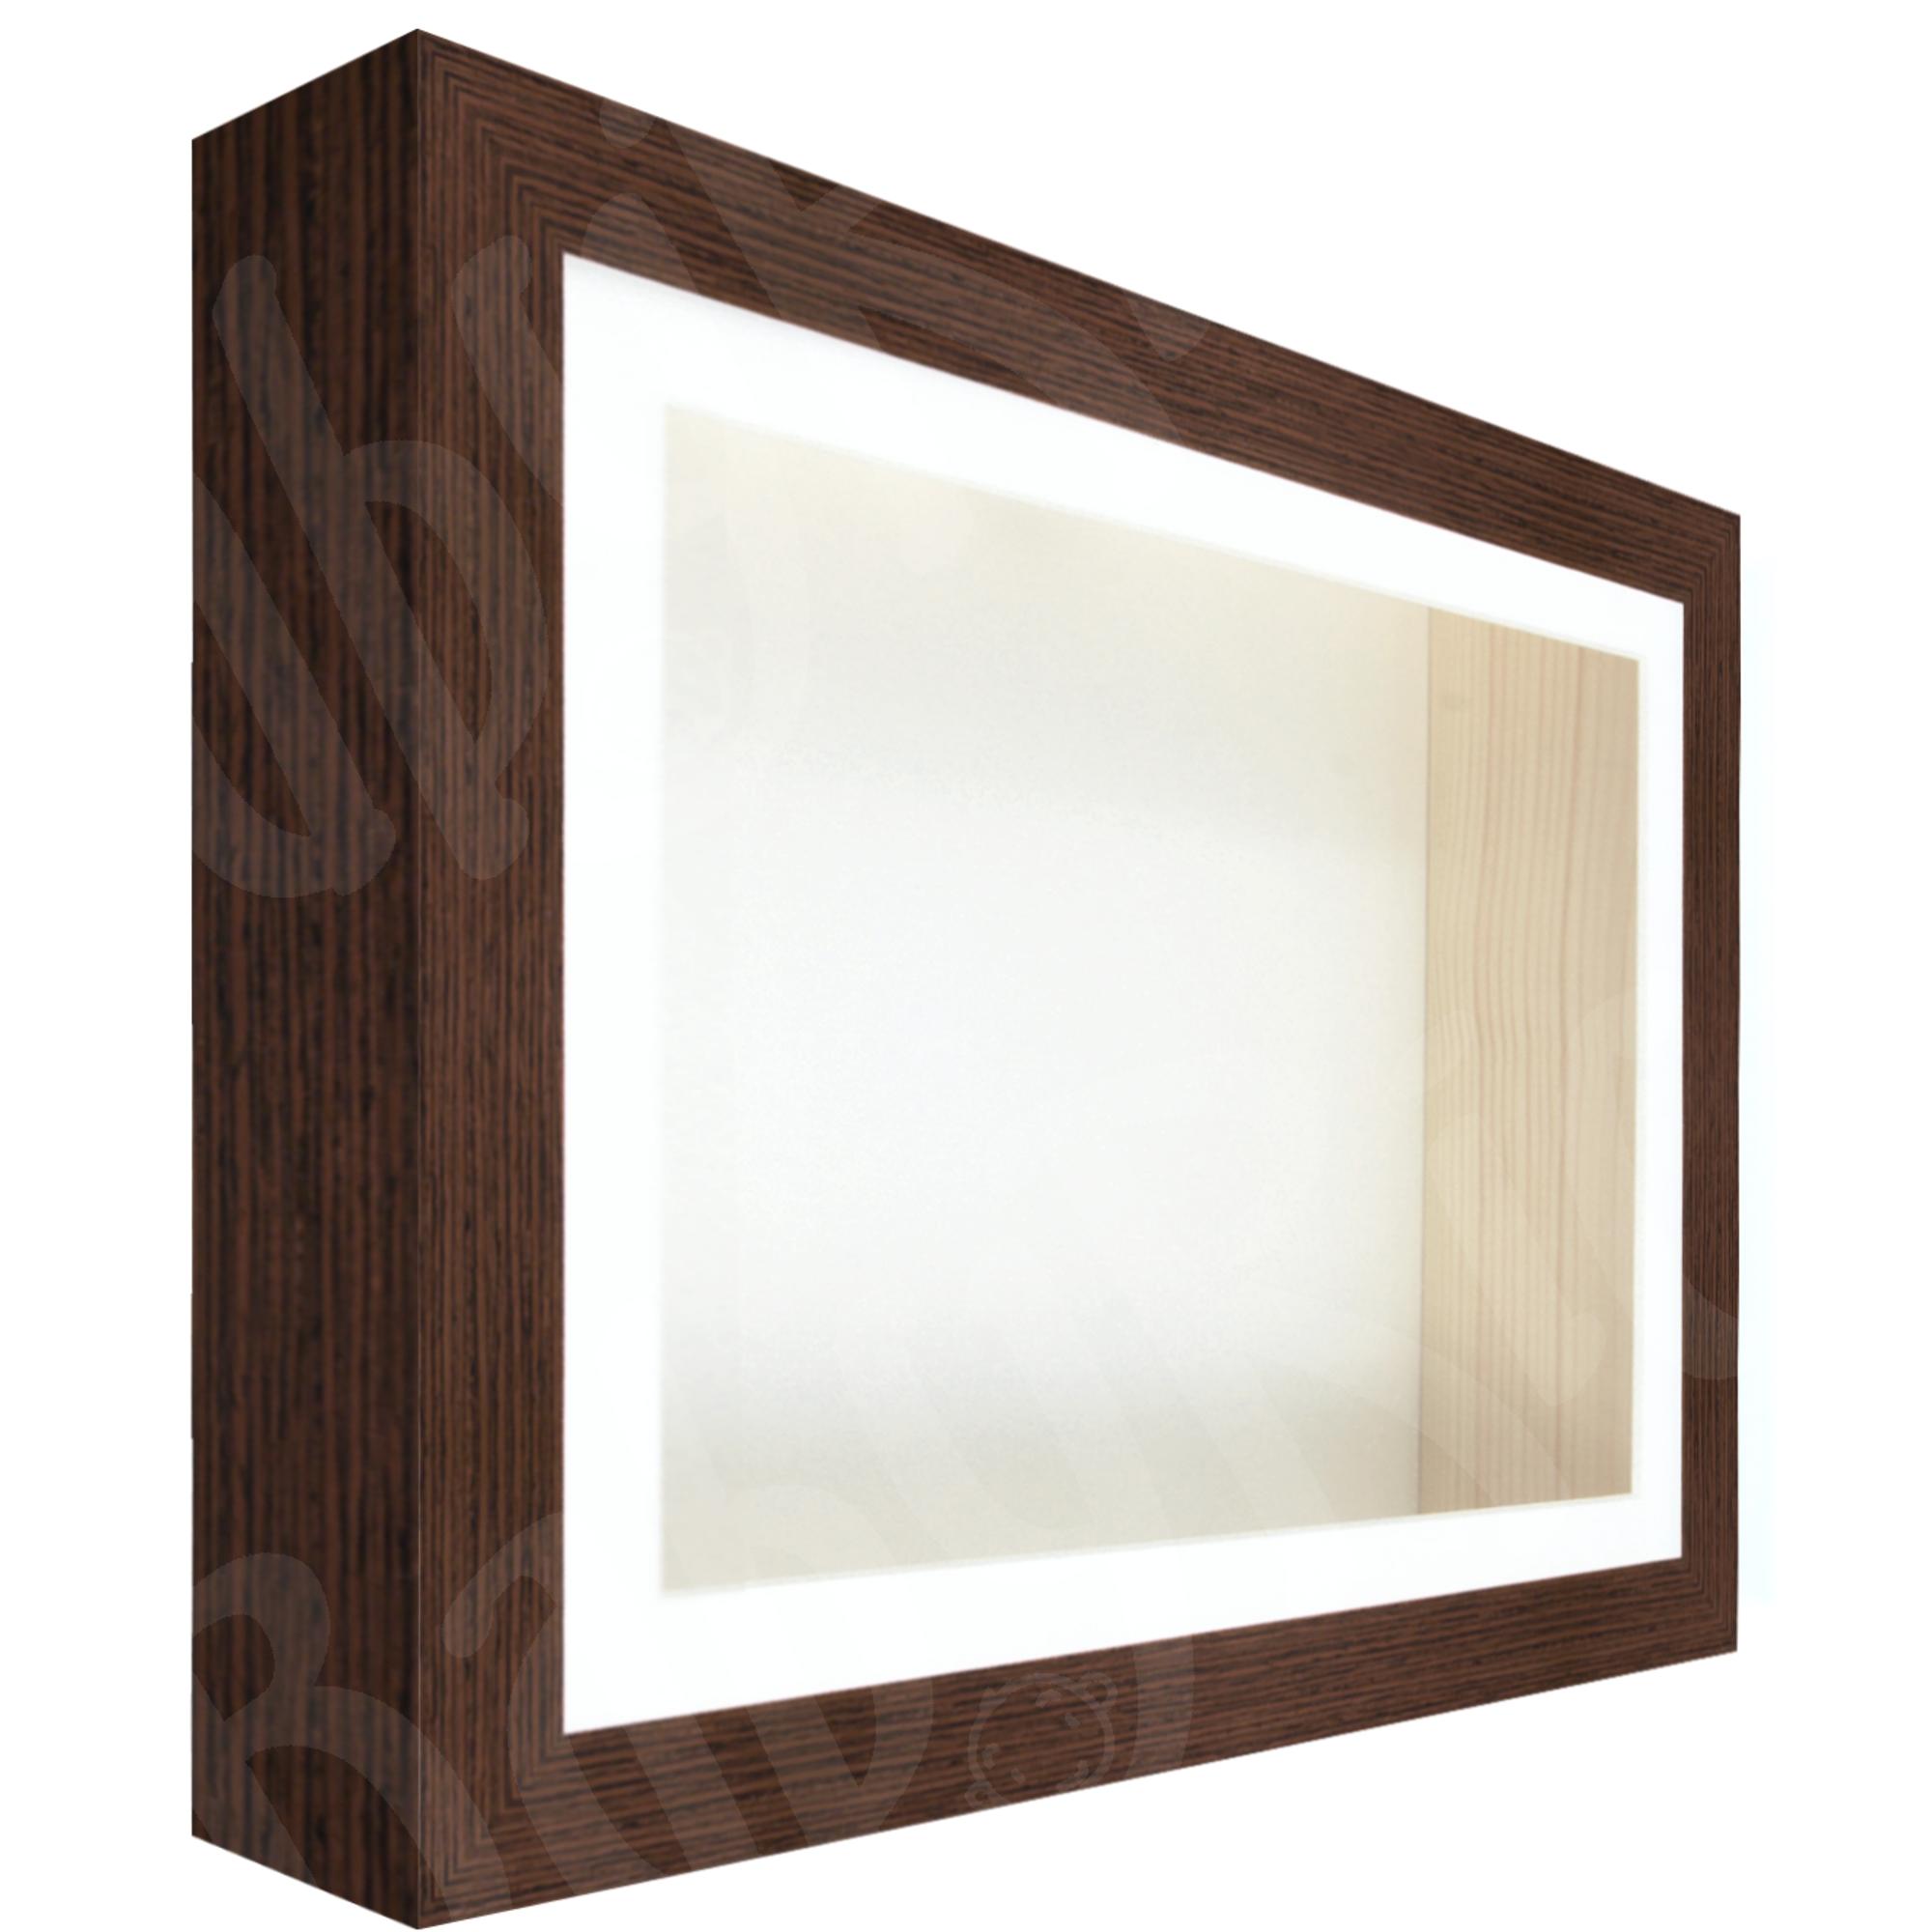 Walnut Woodgrain Box Frame, White Inserts